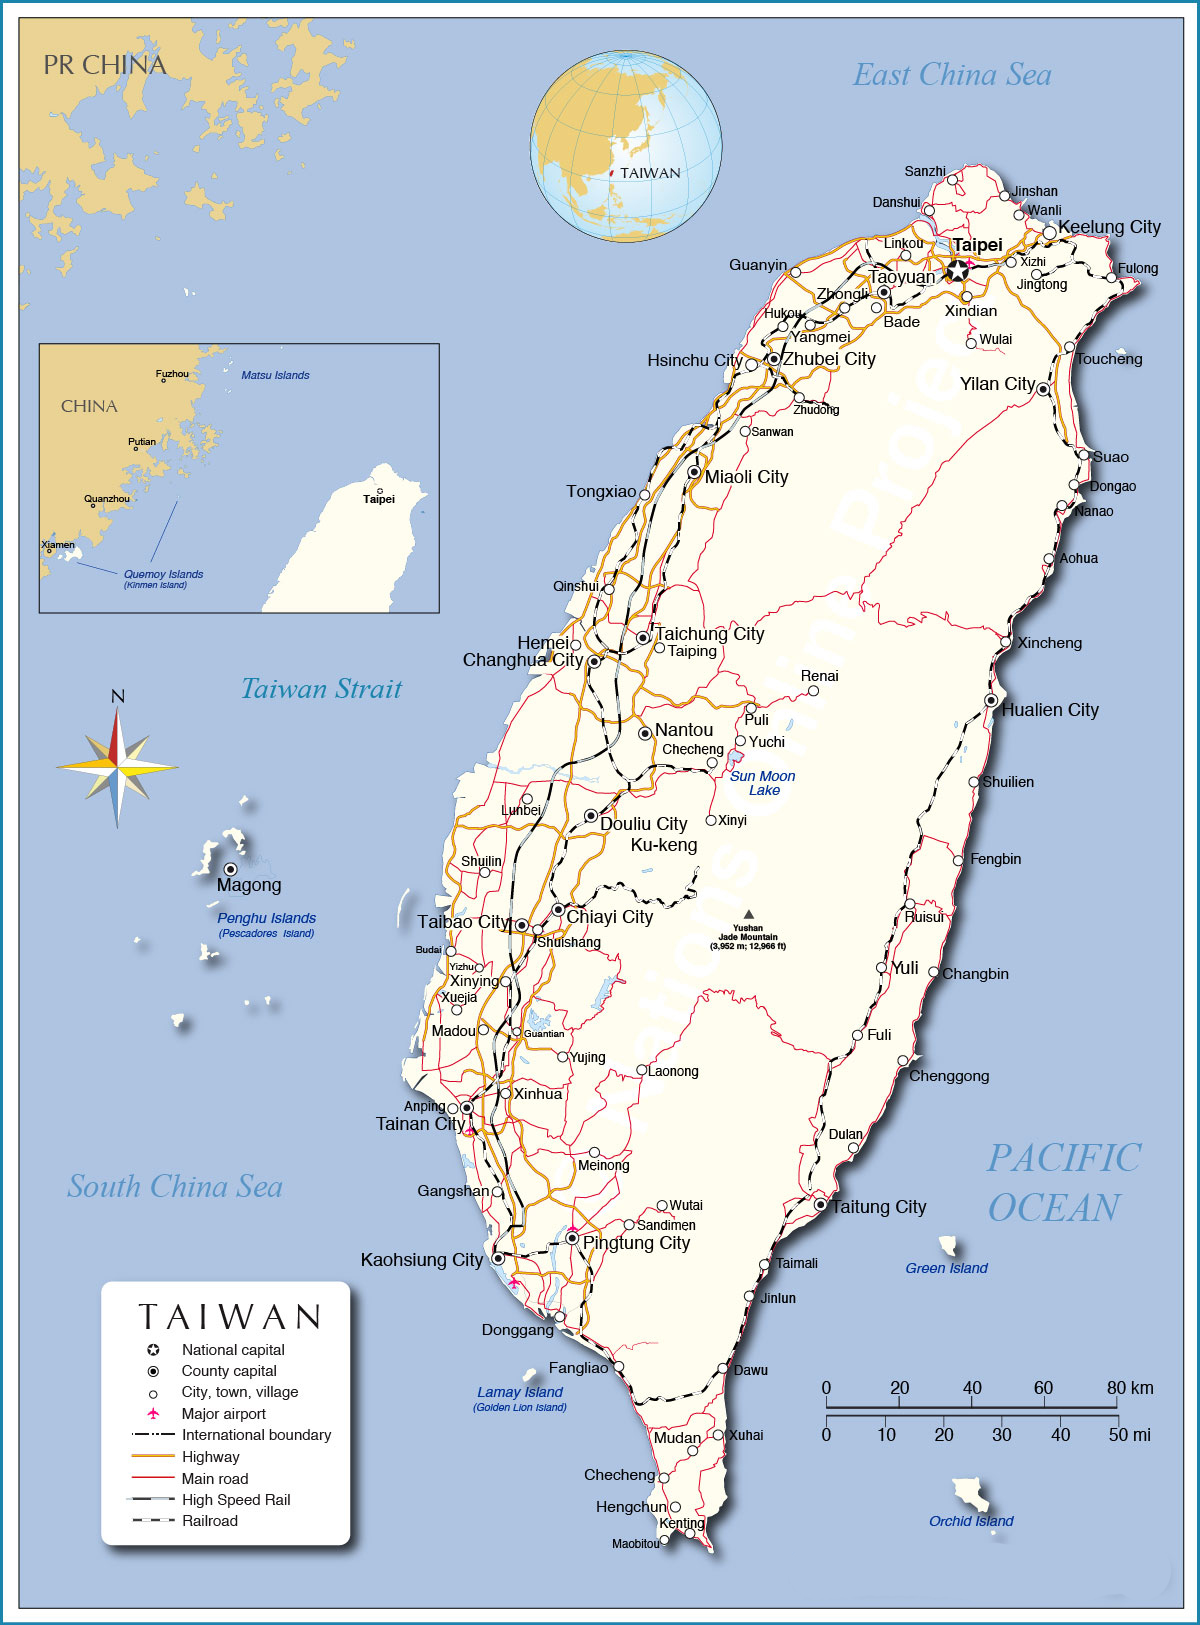 Văn hóa Đài Loan là một nơi tuyệt vời để khám phá. Bản đồ Đài Loan khổ lớn phóng to năm 2024 sẽ cung cấp một cái nhìn toàn diện về văn hóa đa dạng của đất nước này. Hãy xem để khám phá các di sản văn hóa, festival và các nét văn hóa đặc trưng khác của Đài Loan.